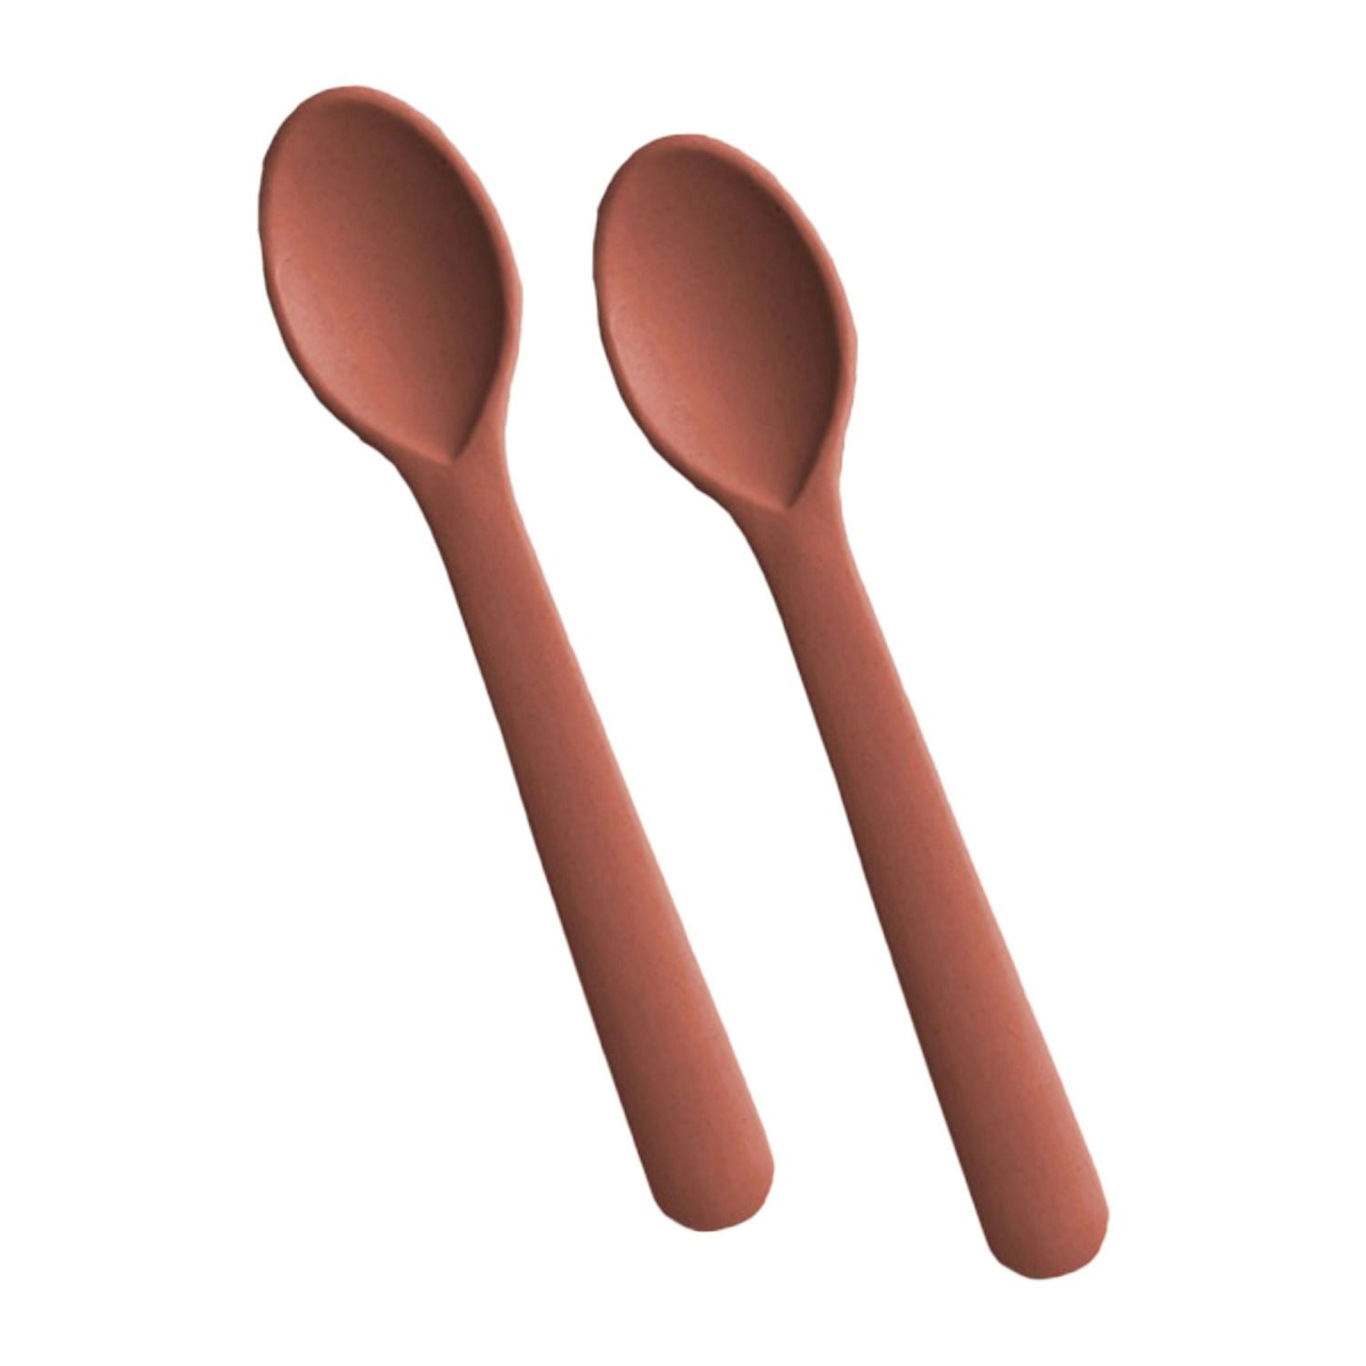 https://royaldesign.com/image/2/cink-cink-spoon-2-pack-3?w=800&quality=80